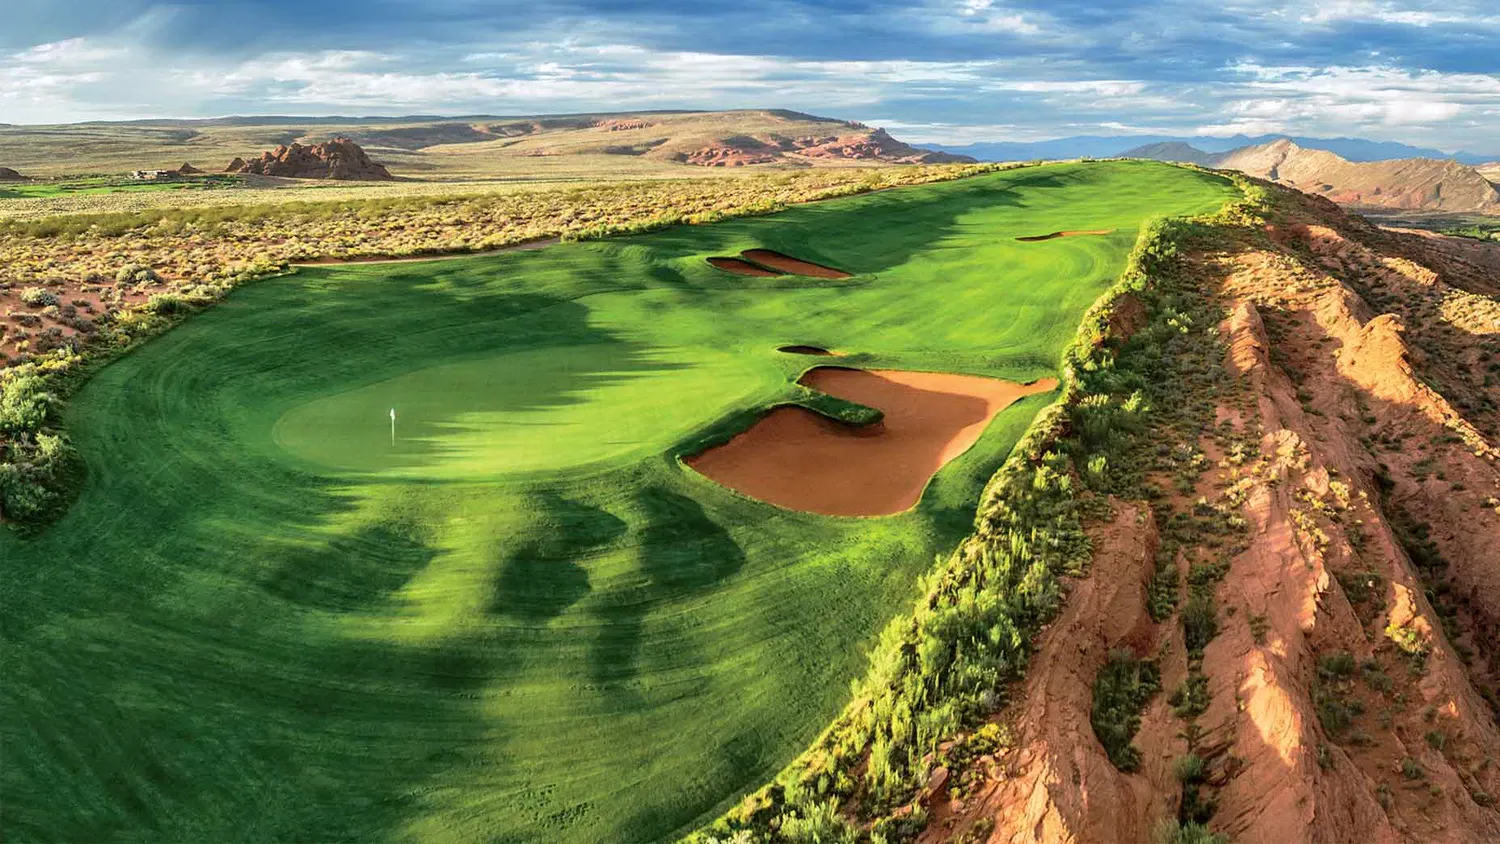 Desert golf course